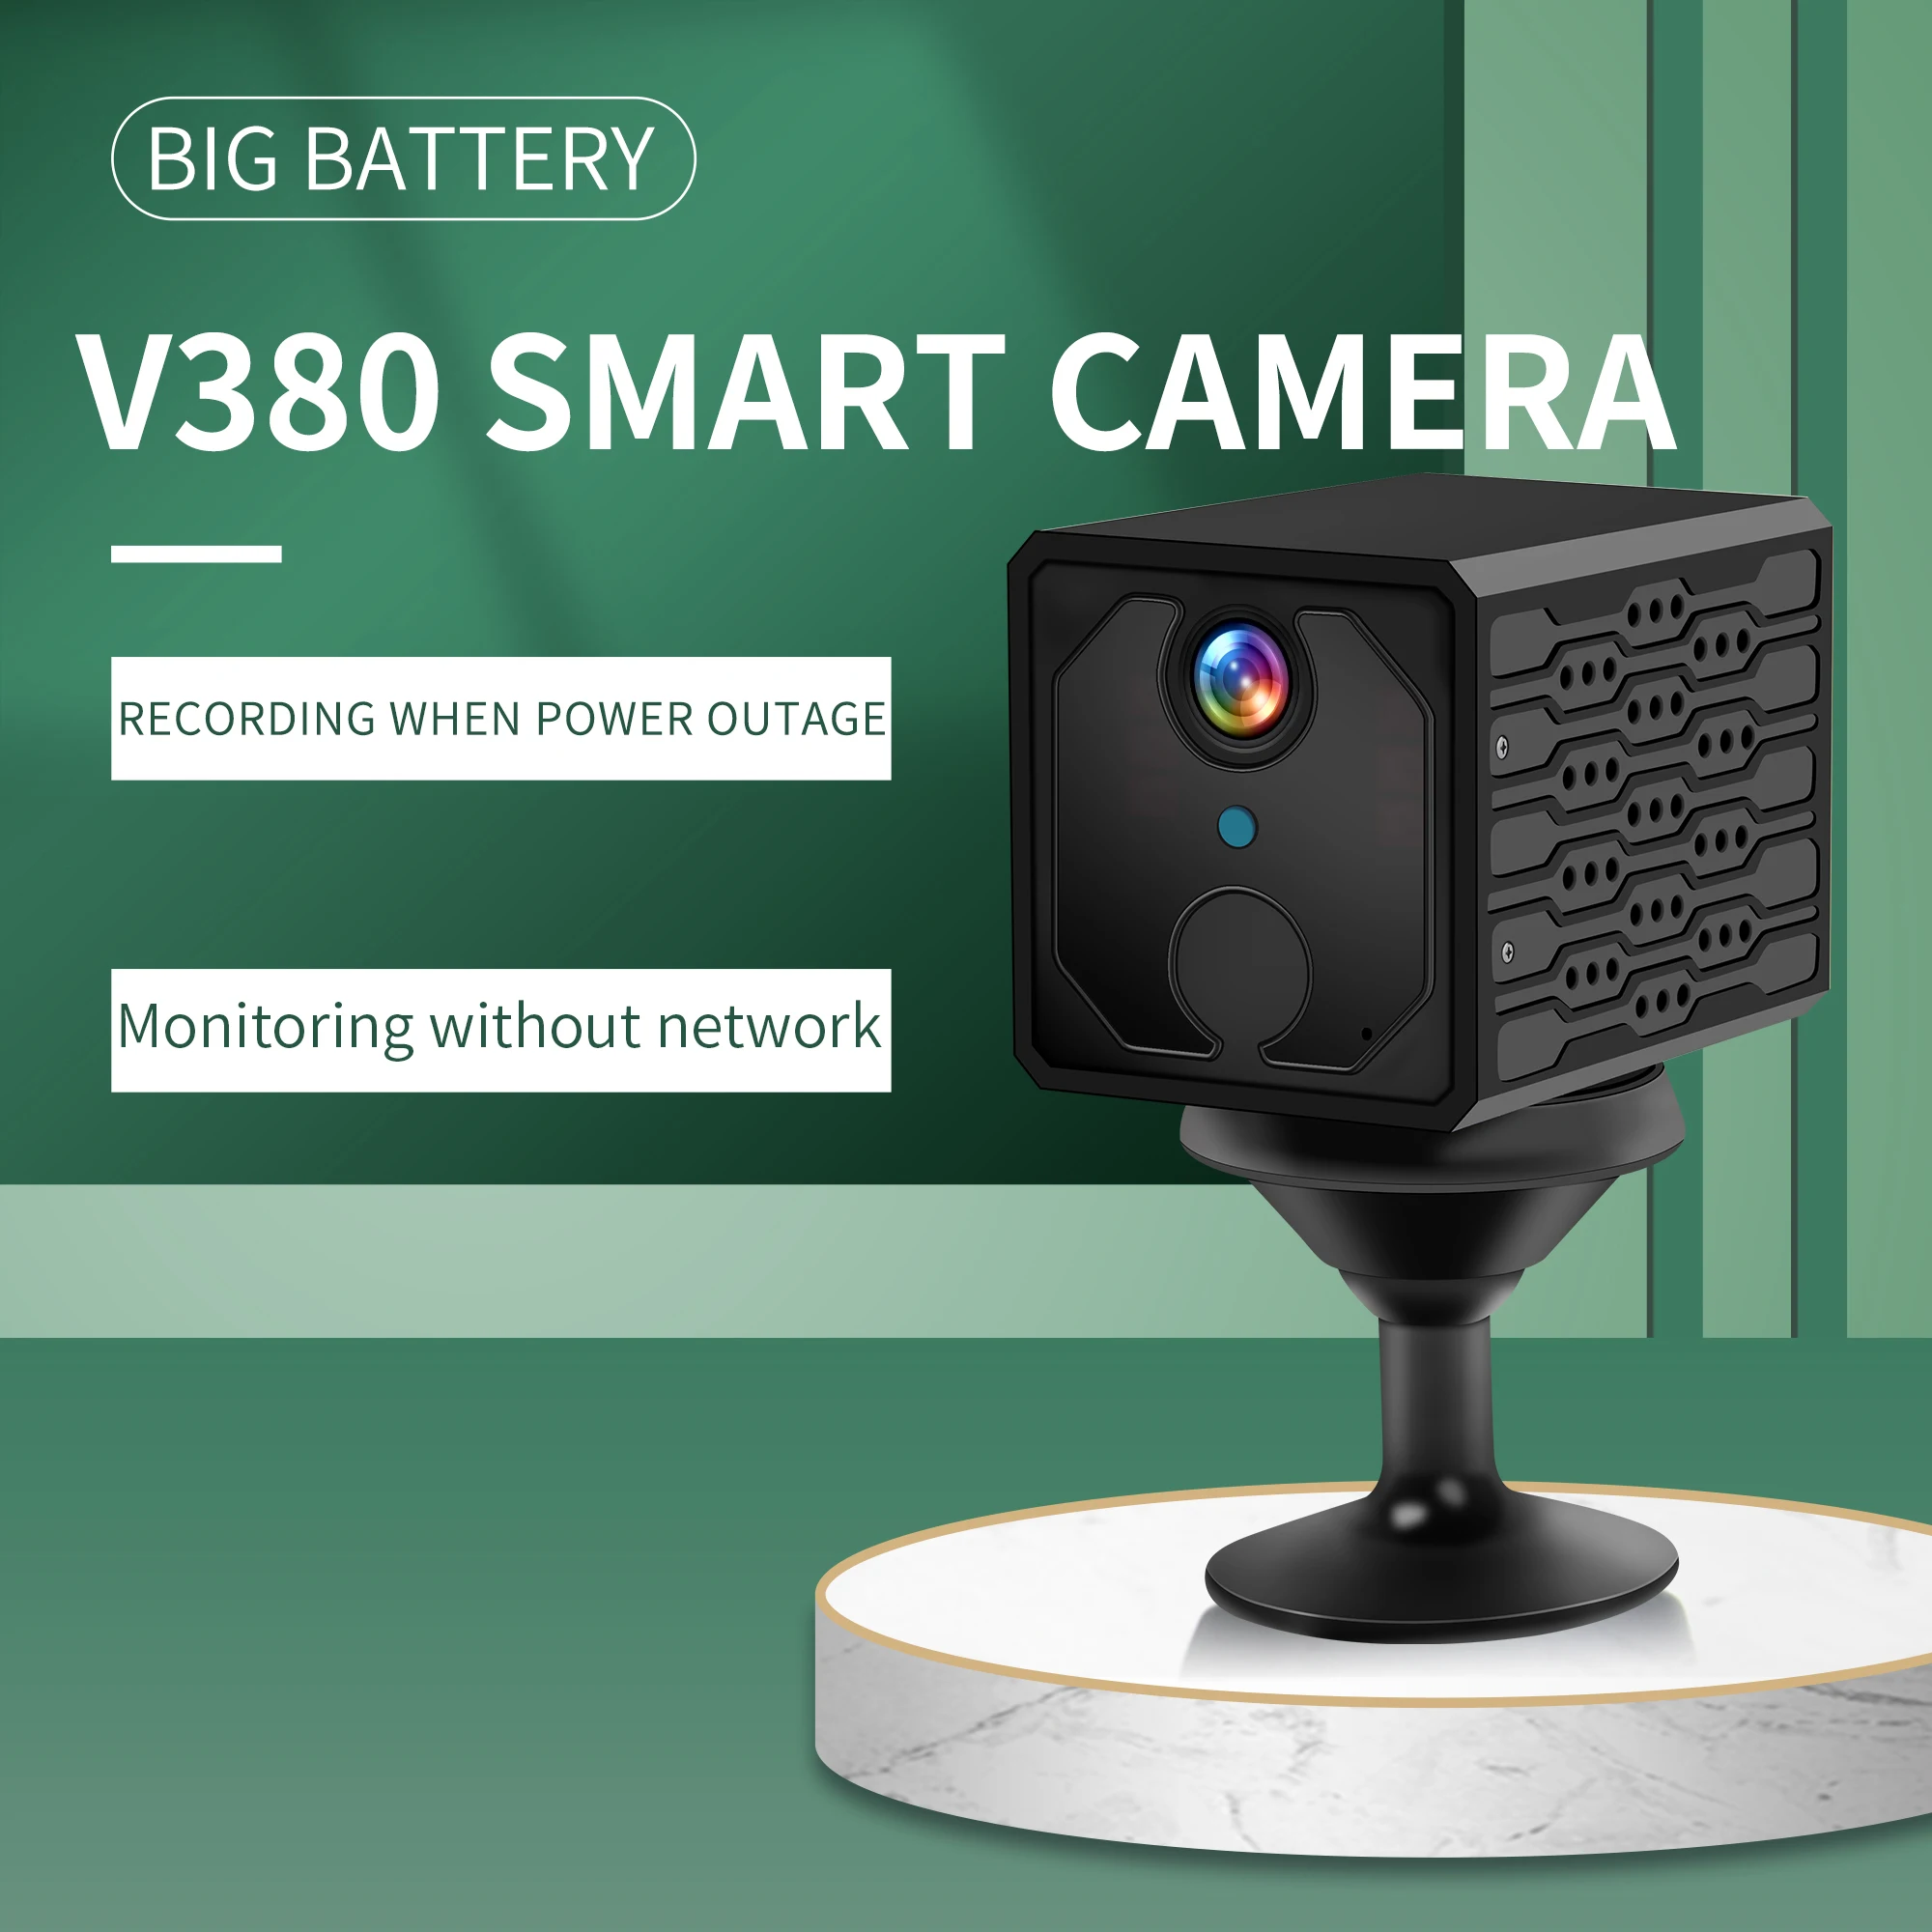 Мини камера V380 PRO ANYKA маленькая квадратная дешевая wifi домашняя портативная